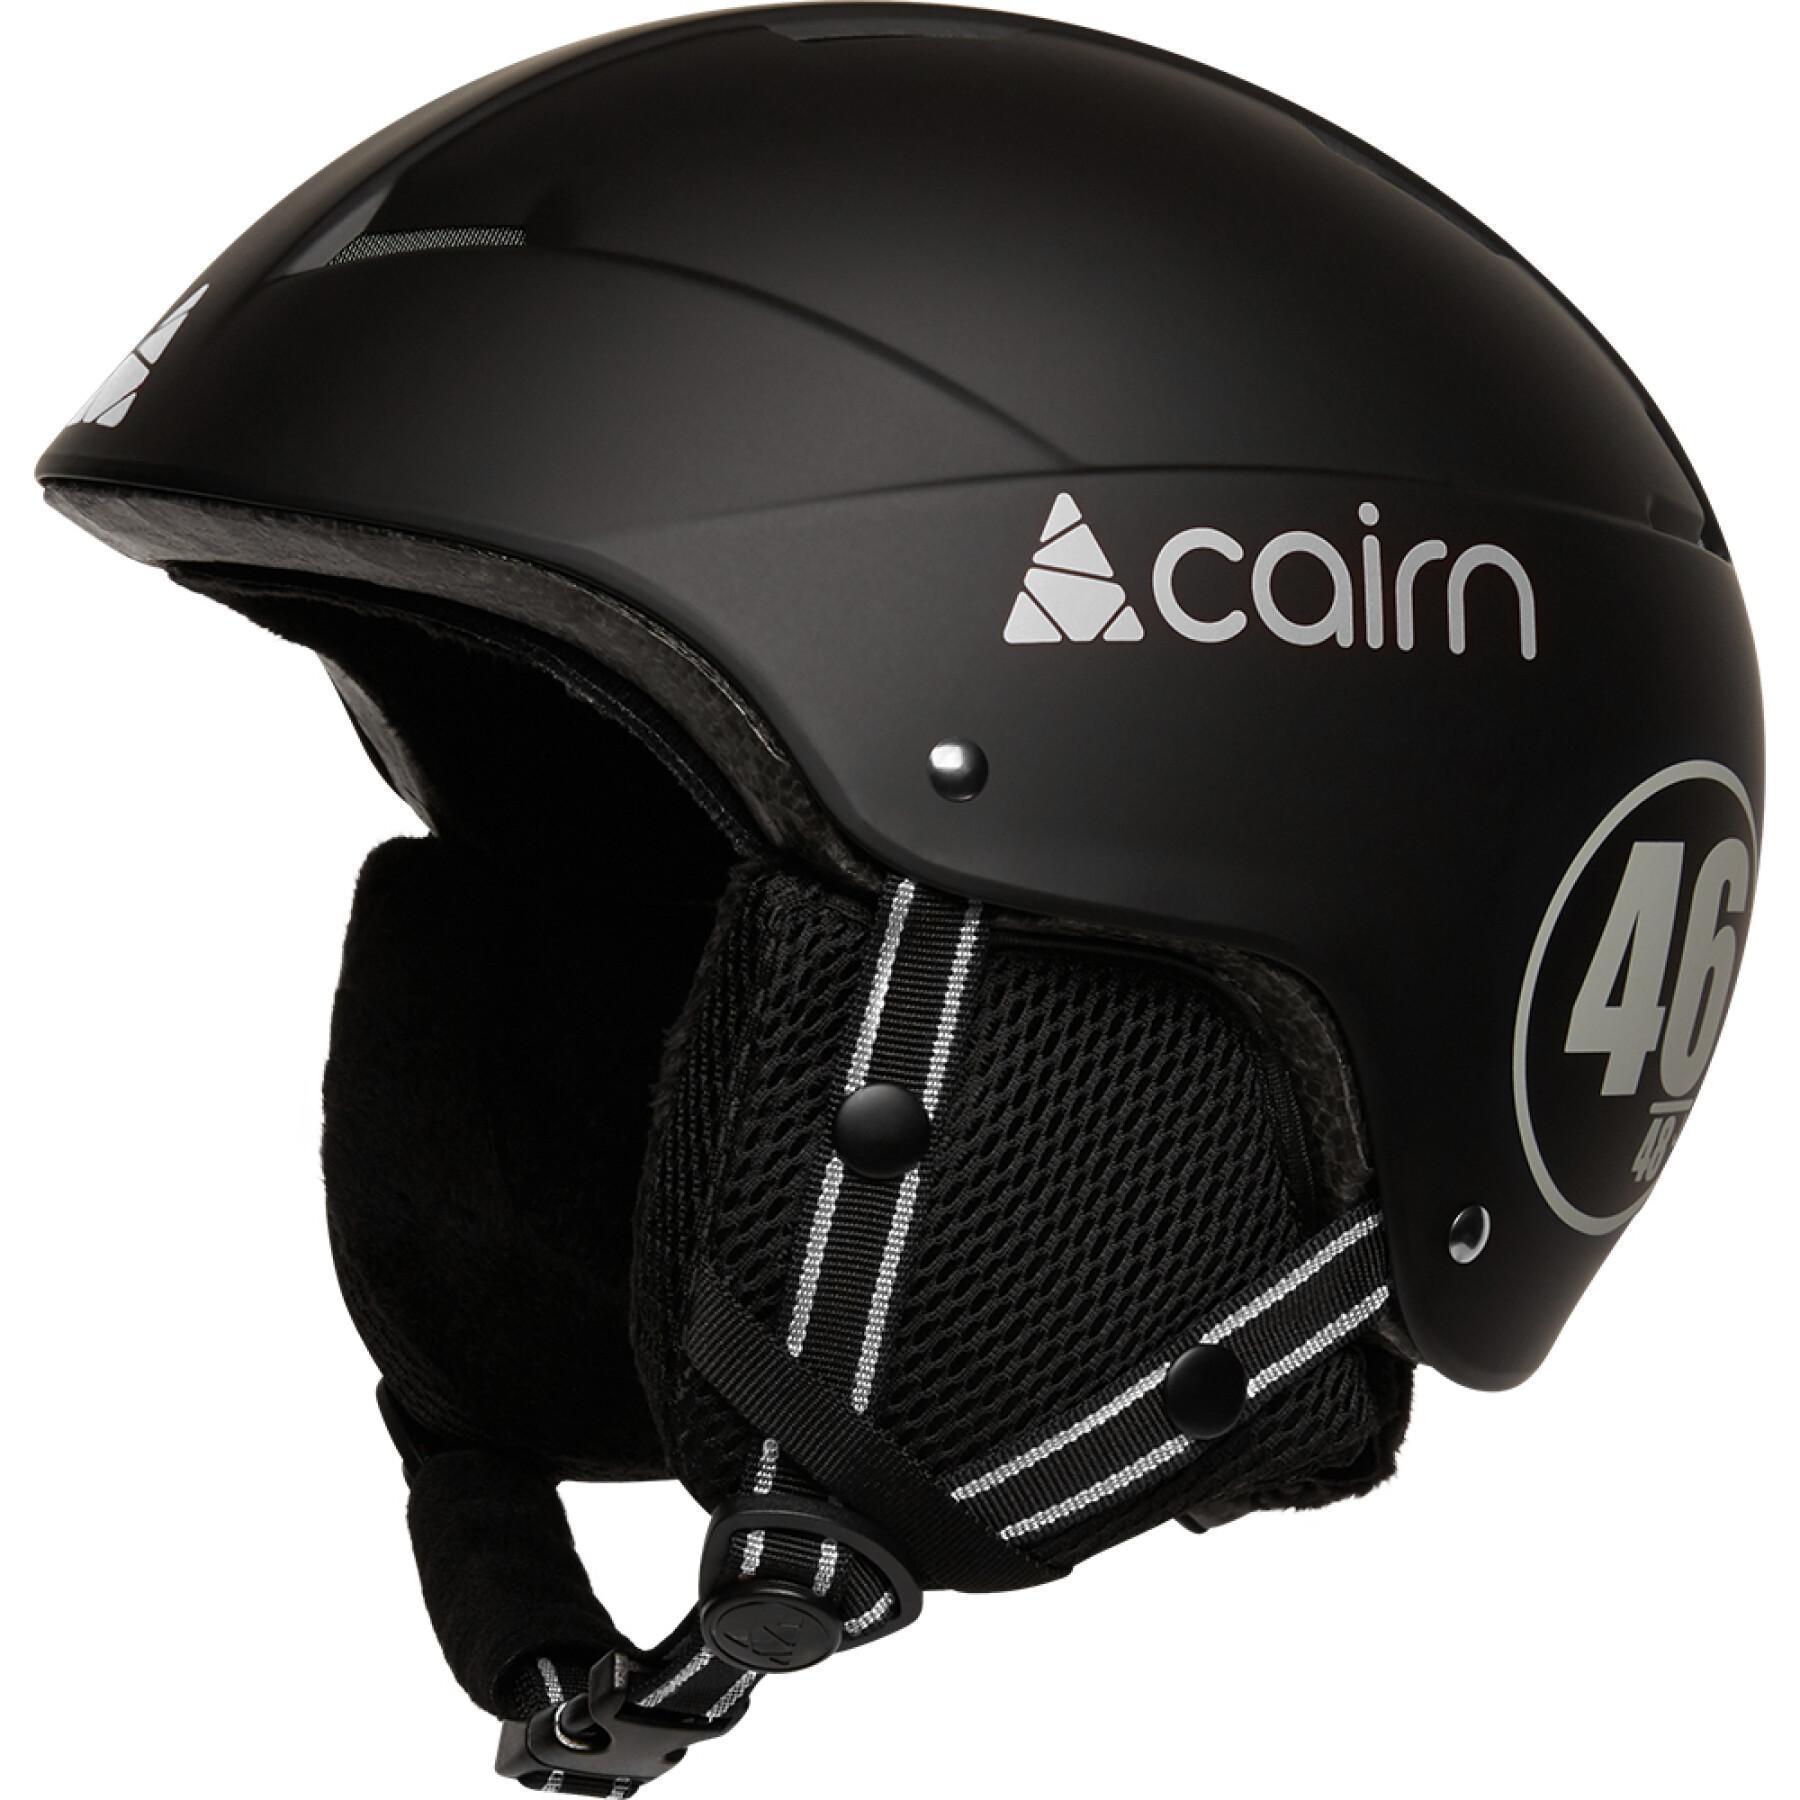 Kinder-Ski-Helm Cairn Loc-Active